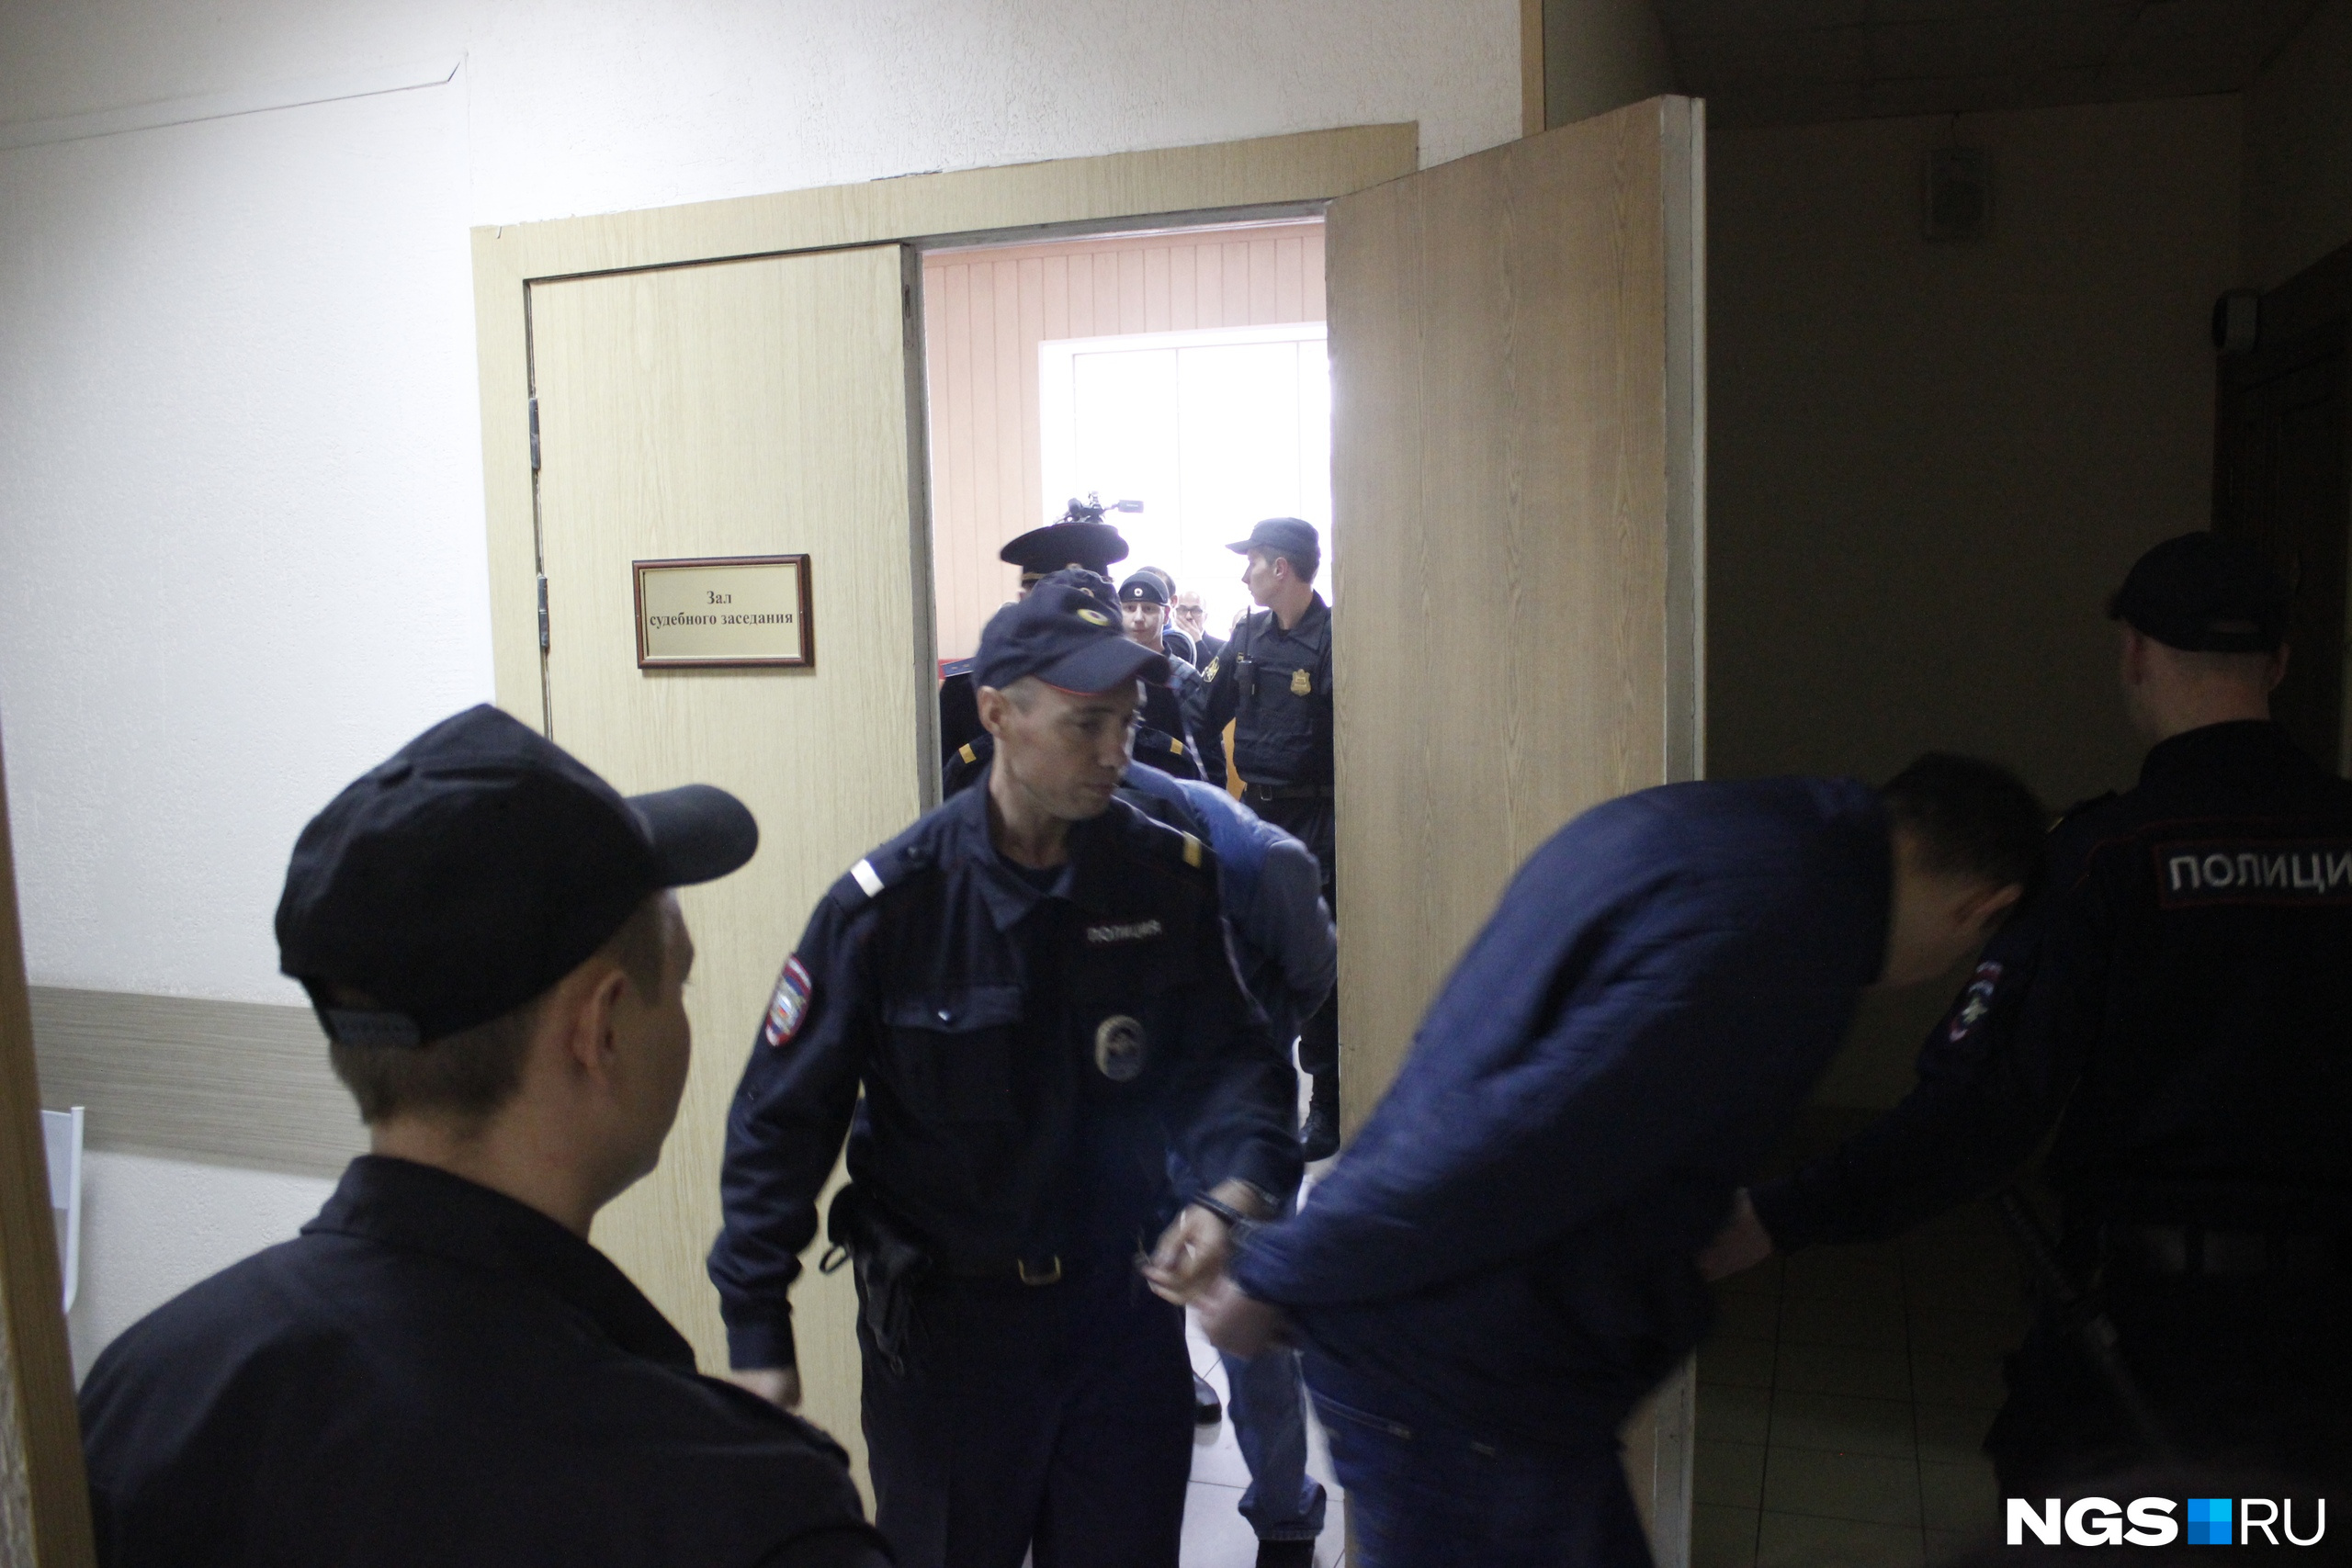 Из зала выводят Сергея Юлина — ему дали 22 года строгого режима. Фото Алёны Истоминой